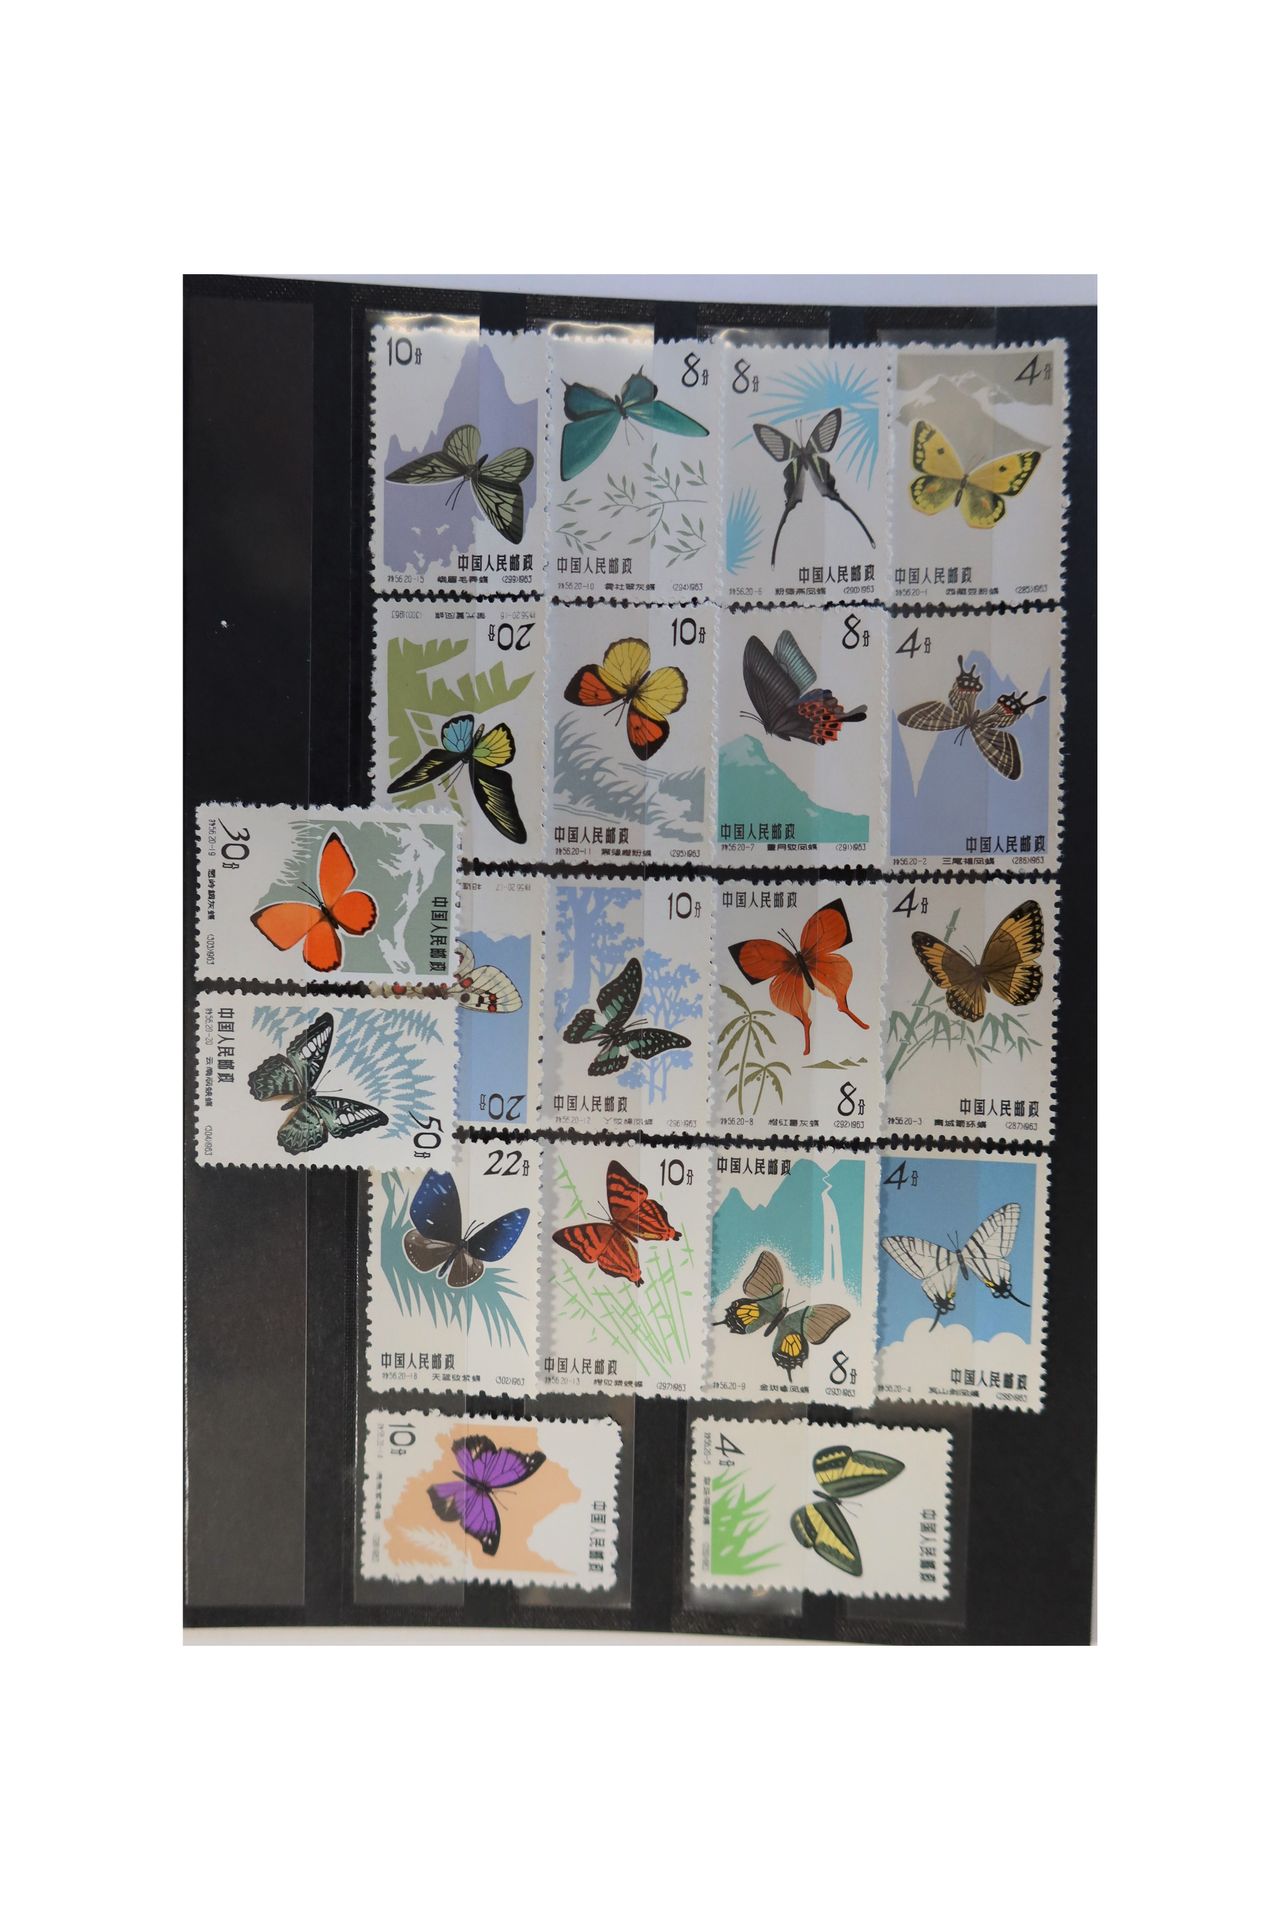 Null [CHINE]
Superbe série des "Papillons" n° 1446 à 1465, neufs, 20 valeurs.